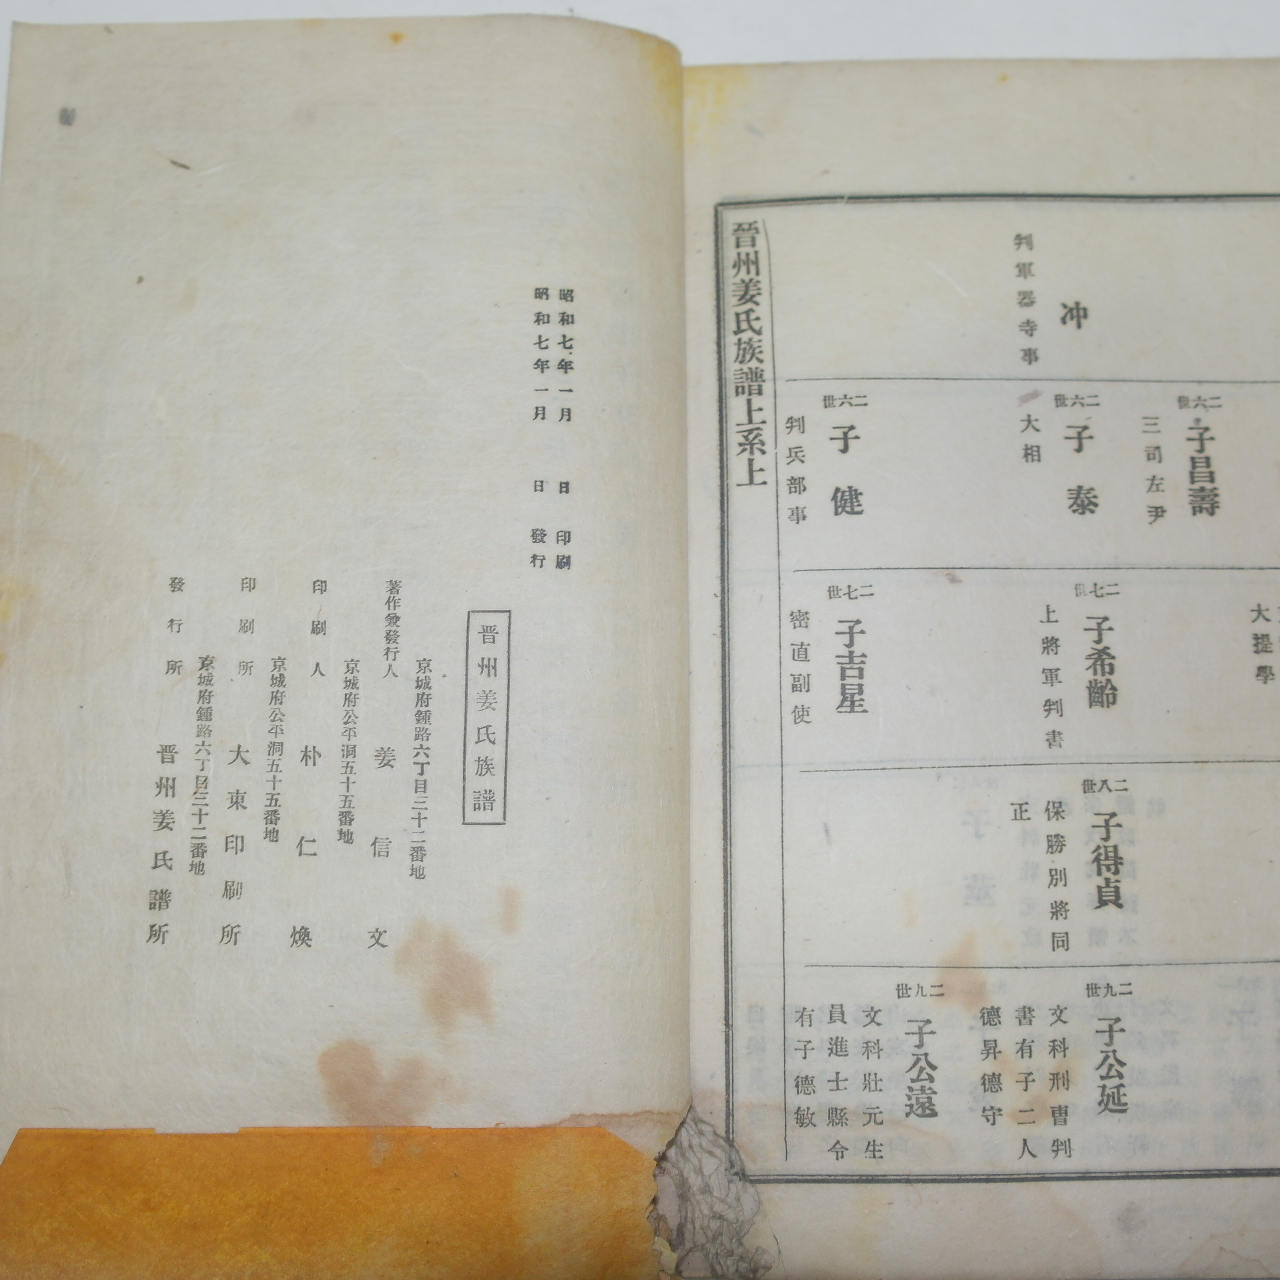 1932년 진주강씨족보(晉州姜氏族譜)상권 1책